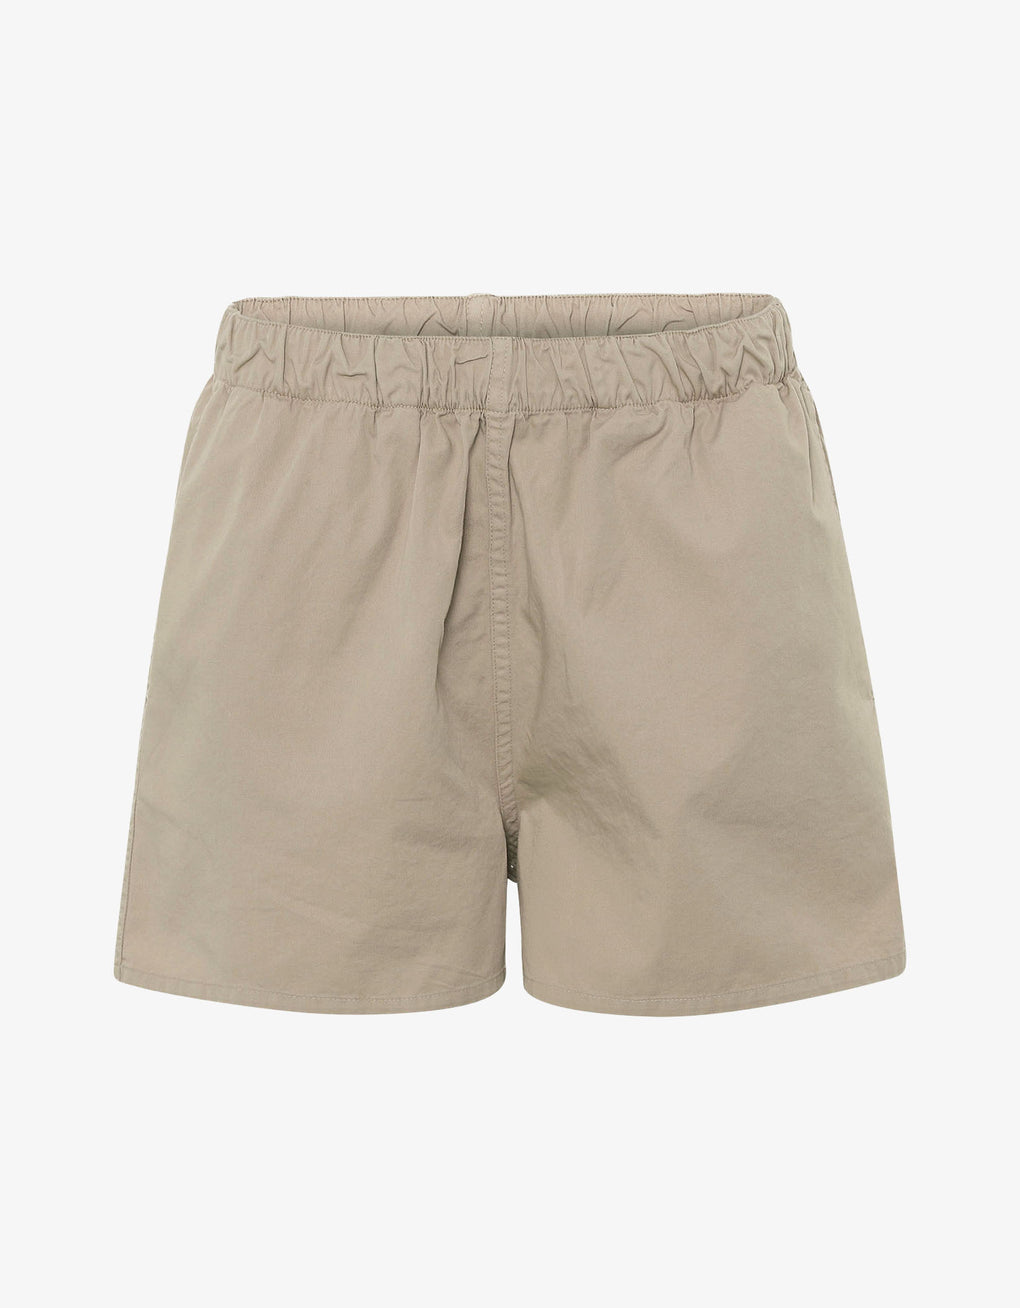 Organic twill shorts - oyster grey